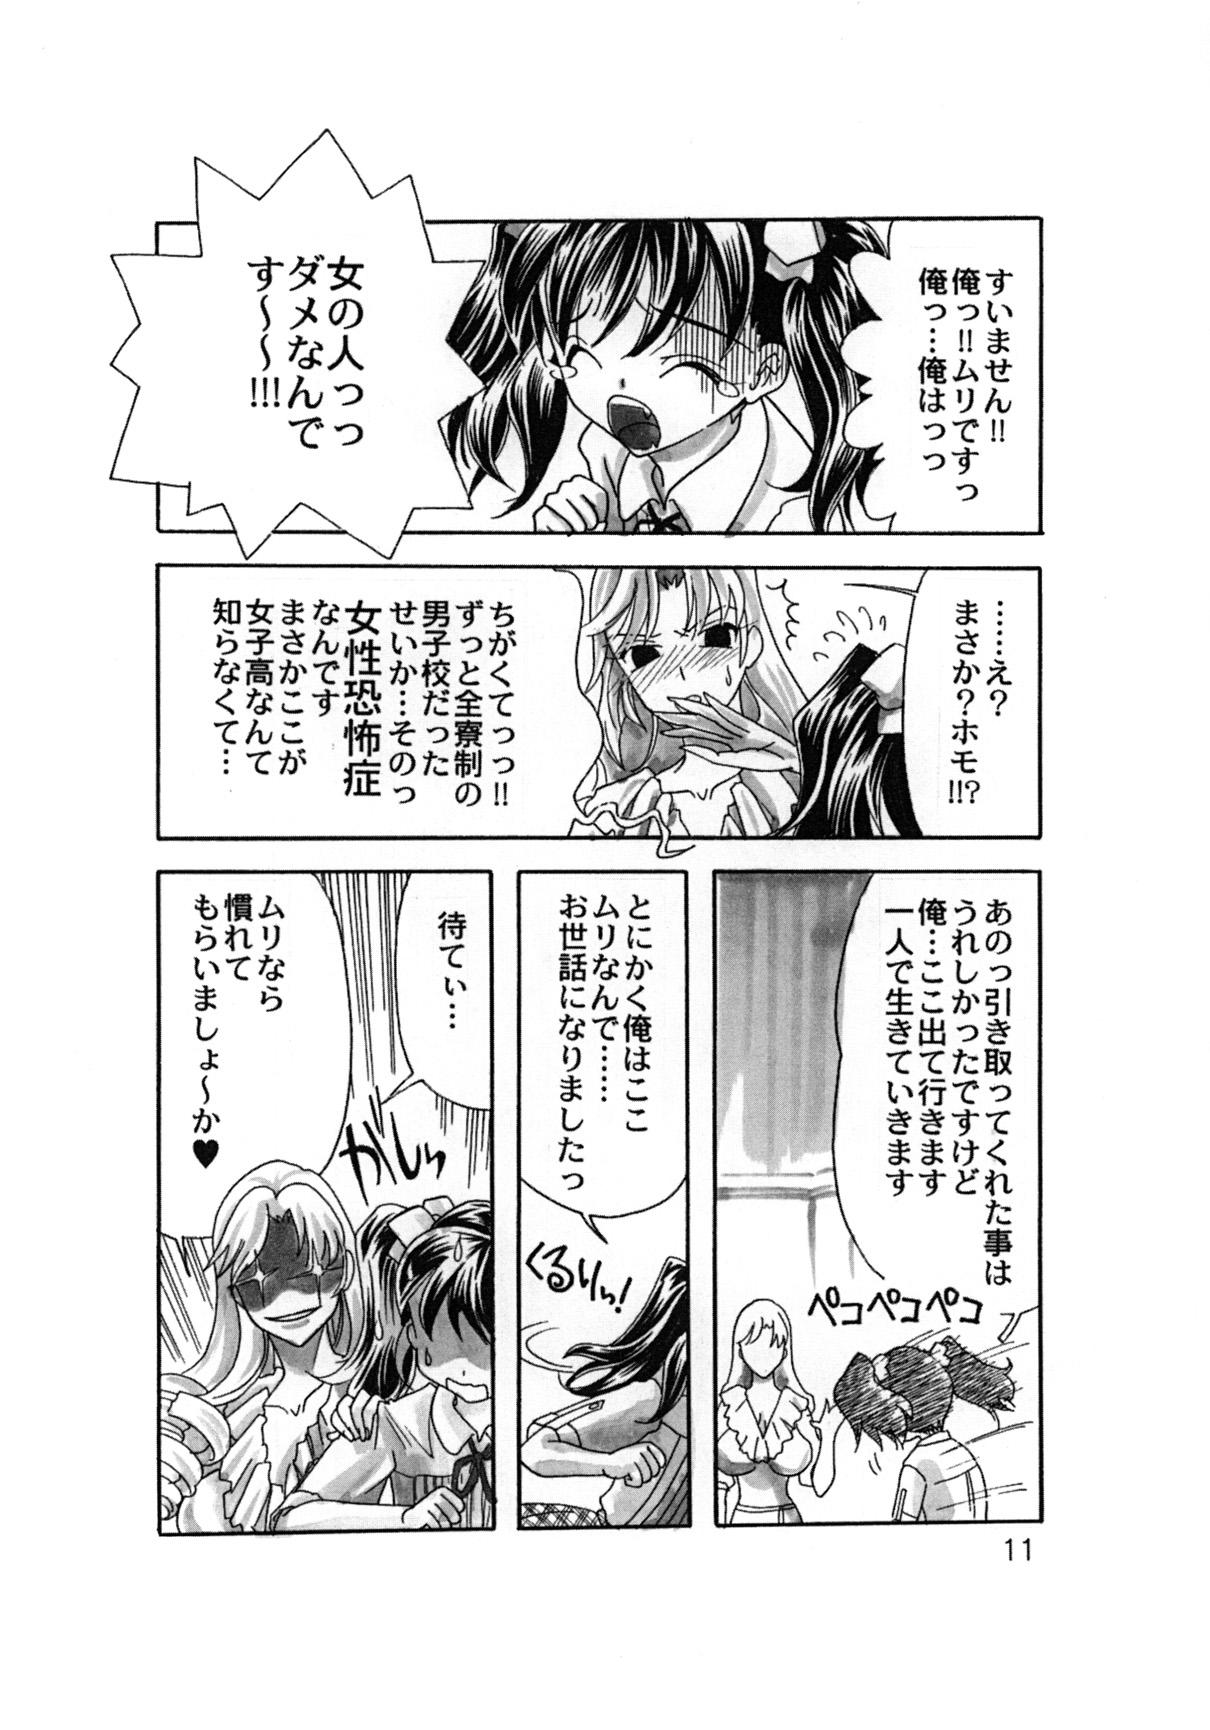 Cream Rakuen Jogakuen no Hanazono 1 Chichona - Page 12